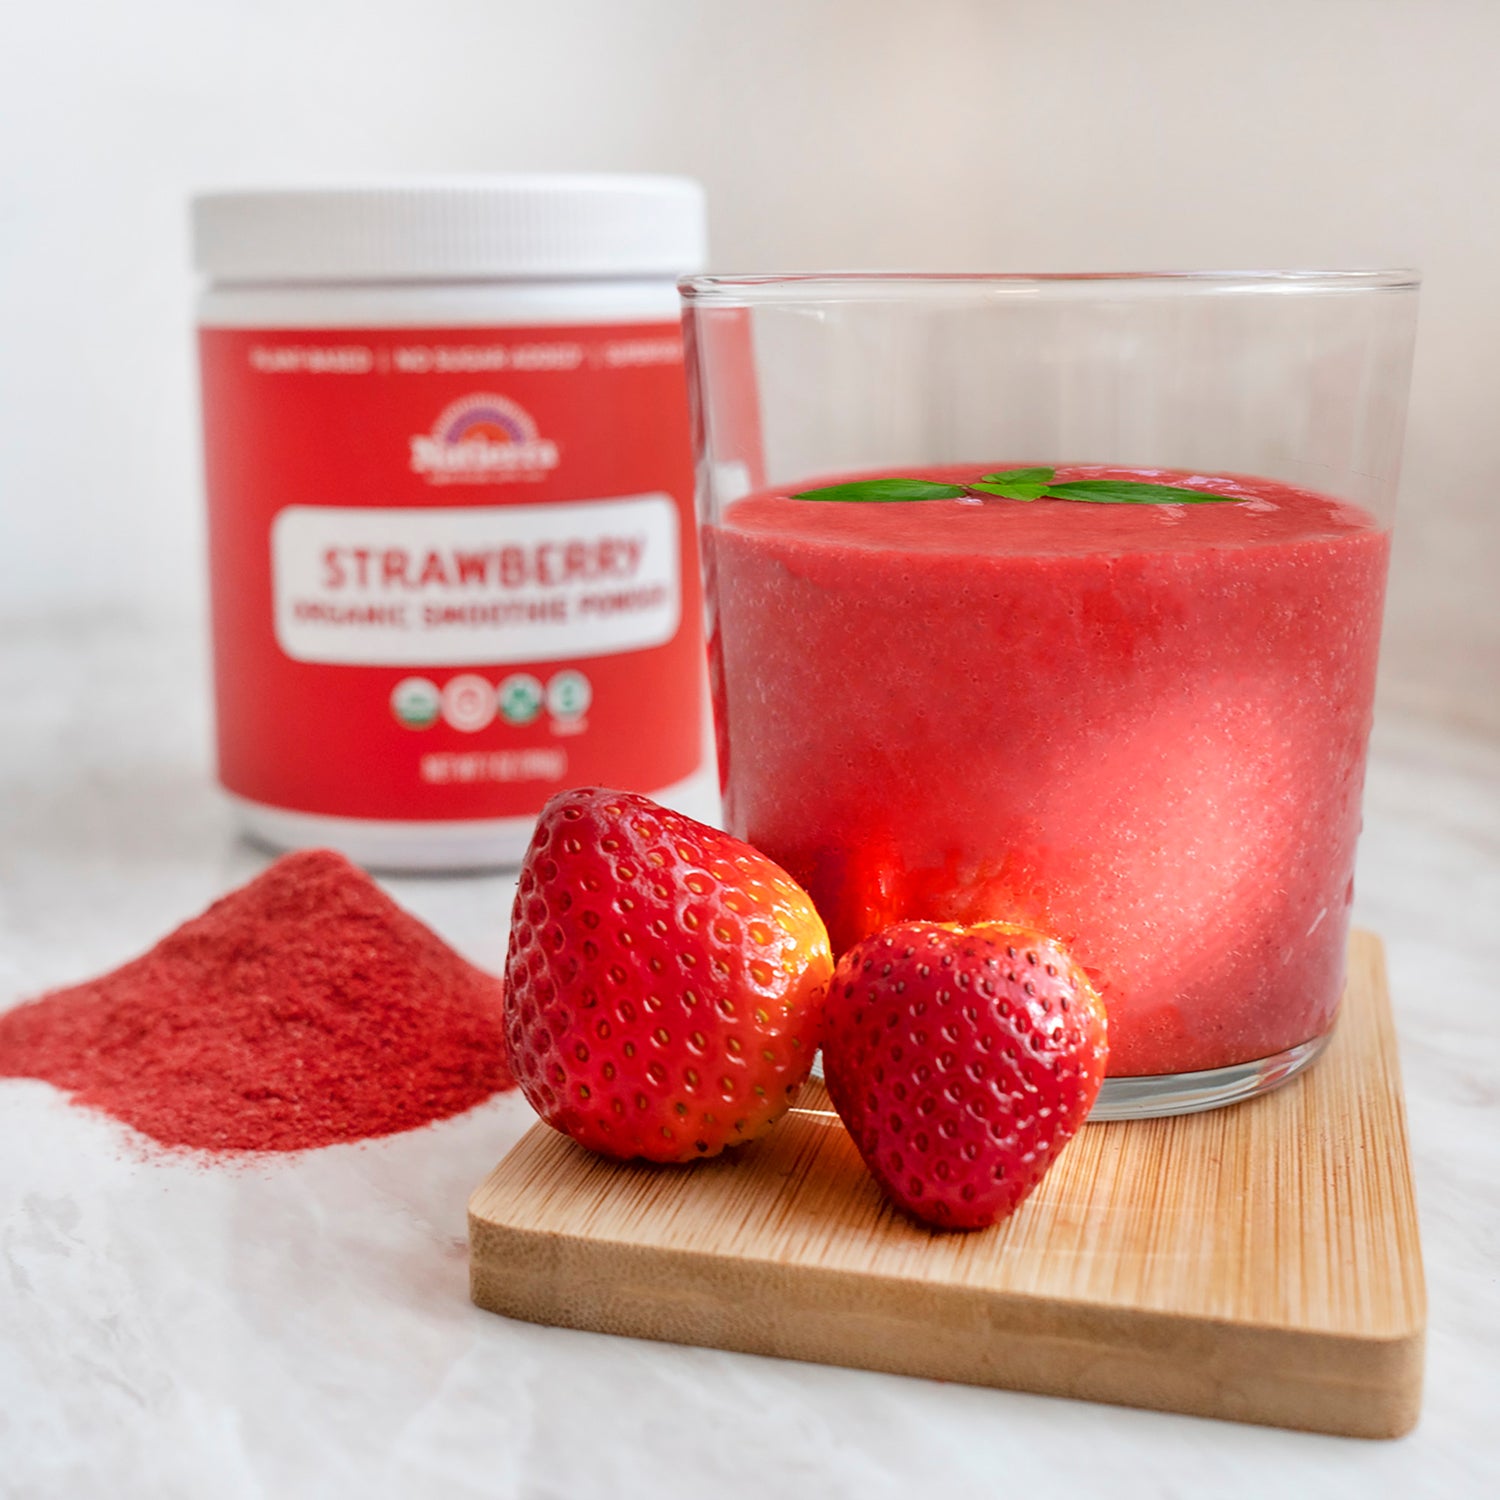 Organic freeze-dried strawberry smoothie